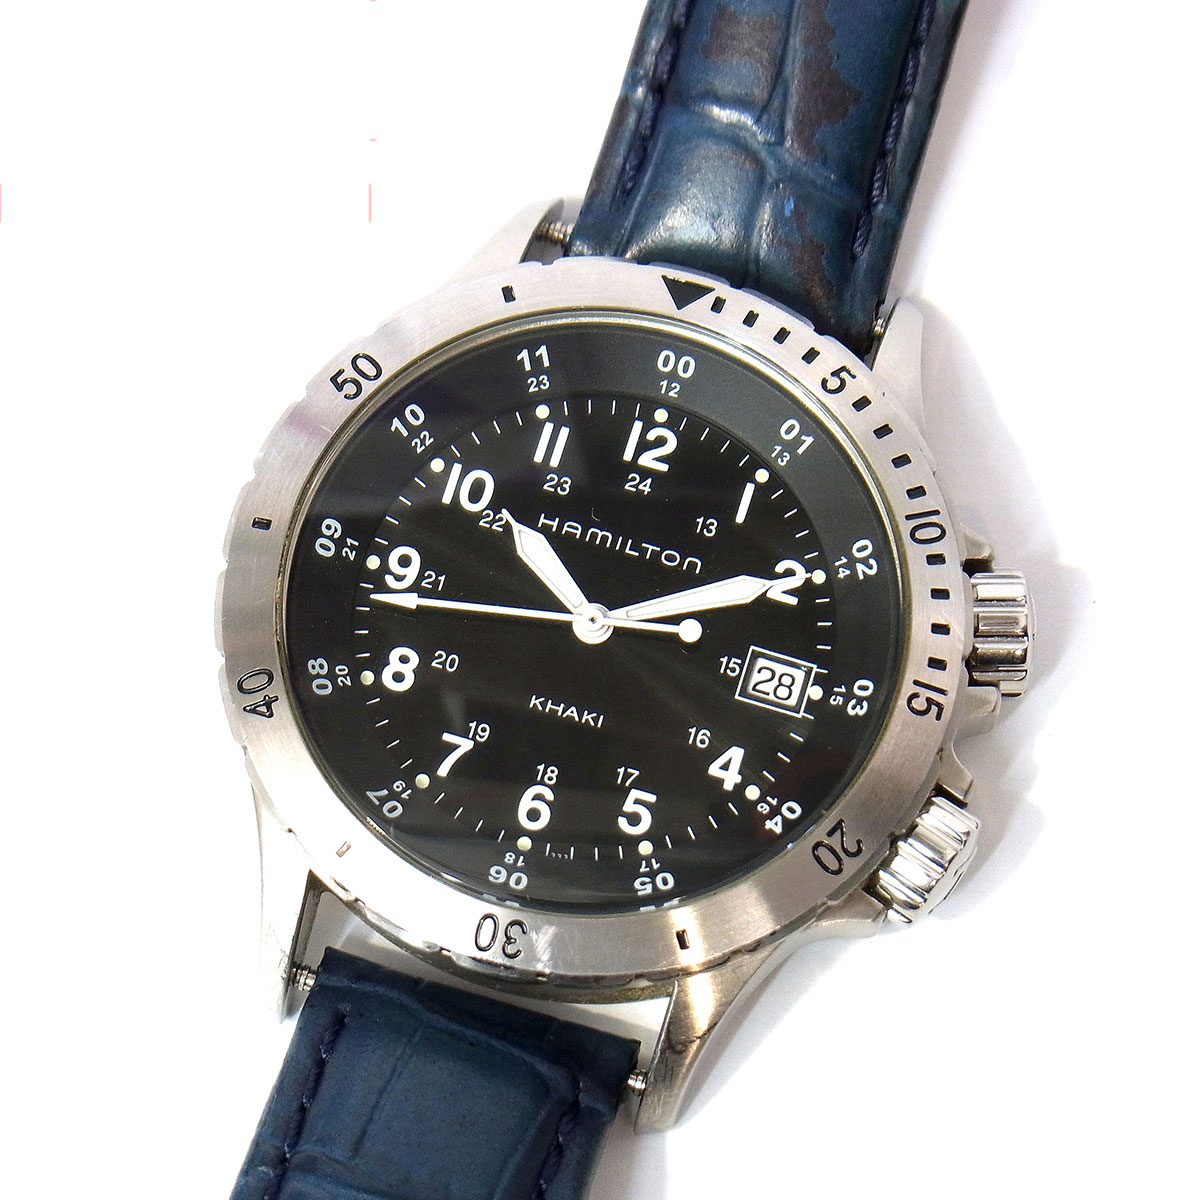 ハミルトン HAMILTON カーキ フィールド H744511 メンズ 腕時計